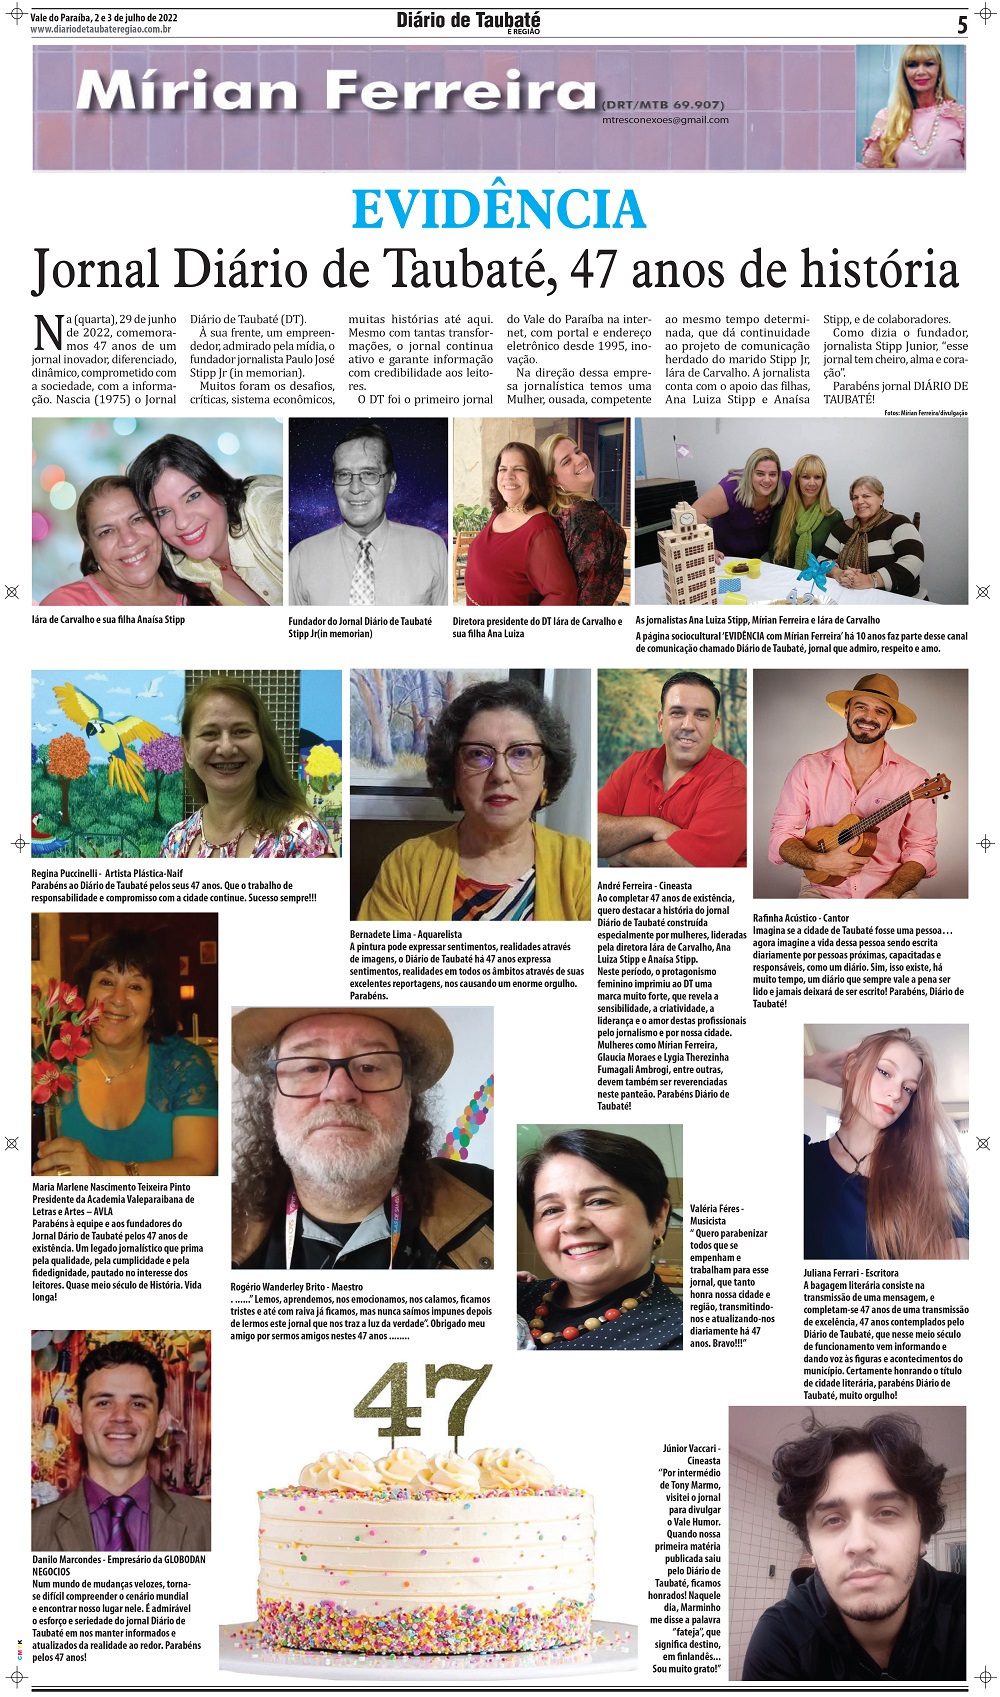 Evidência – Jornal Diário de Taubaté, 47 anos de história